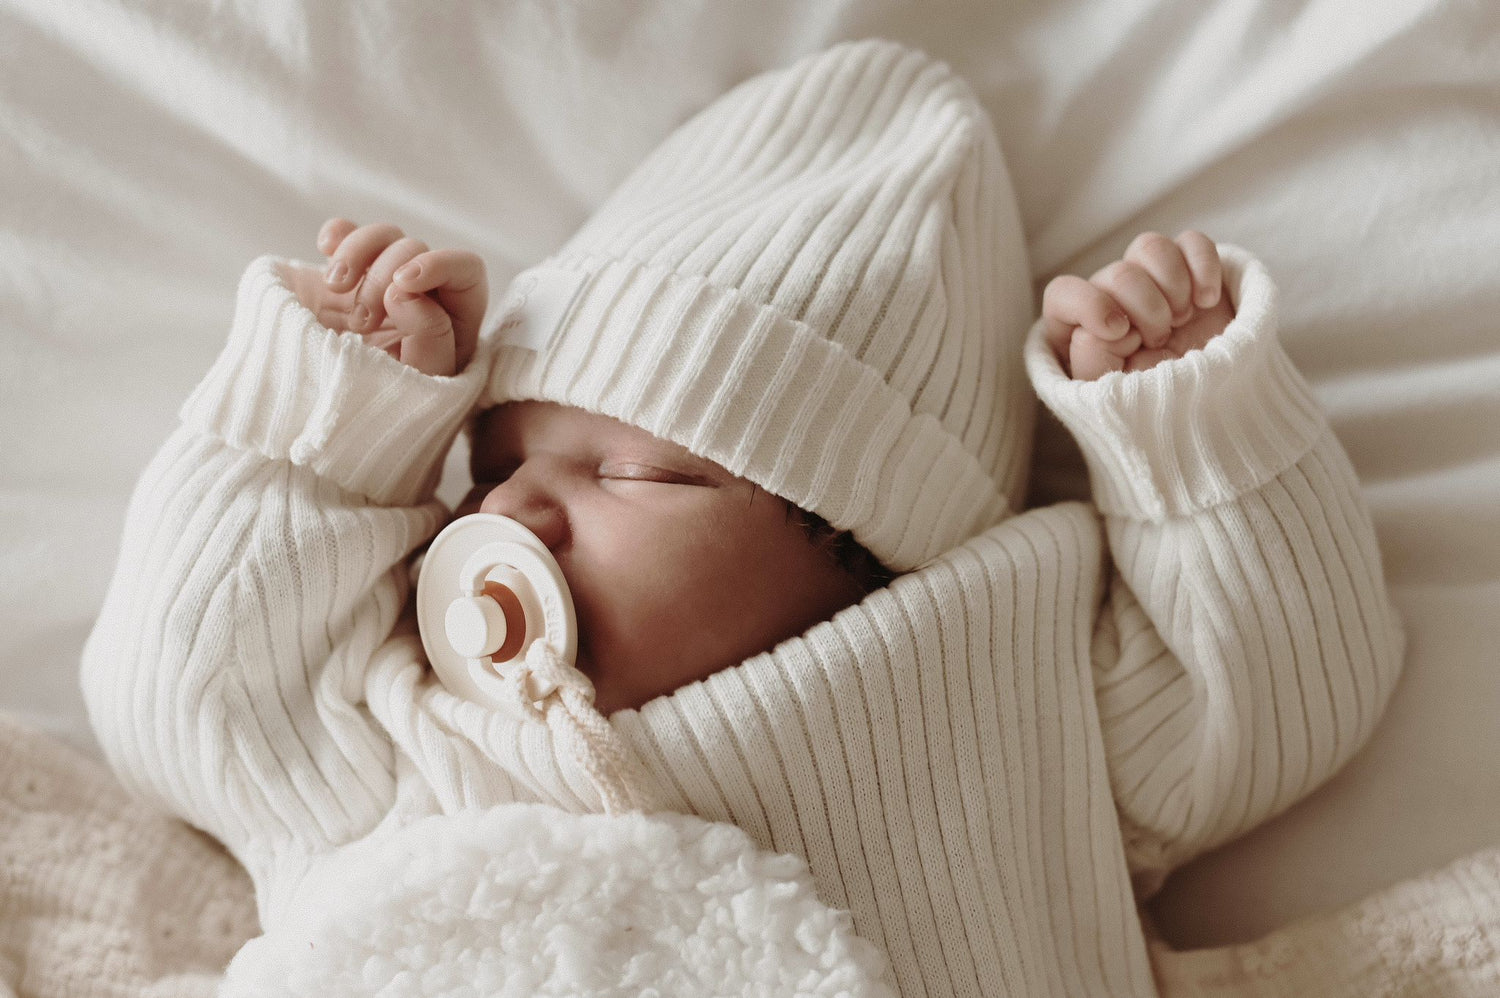 Een vredige pasgeboren baby, gekleed in witte kleding, lag comfortabel in een klein rotan wiegje, met een zachte deken en een delicate Yumi Baby Knitted Muts Pearl Whisper 0-3 mnd zachtjes gedrapeerd over de zijkant.